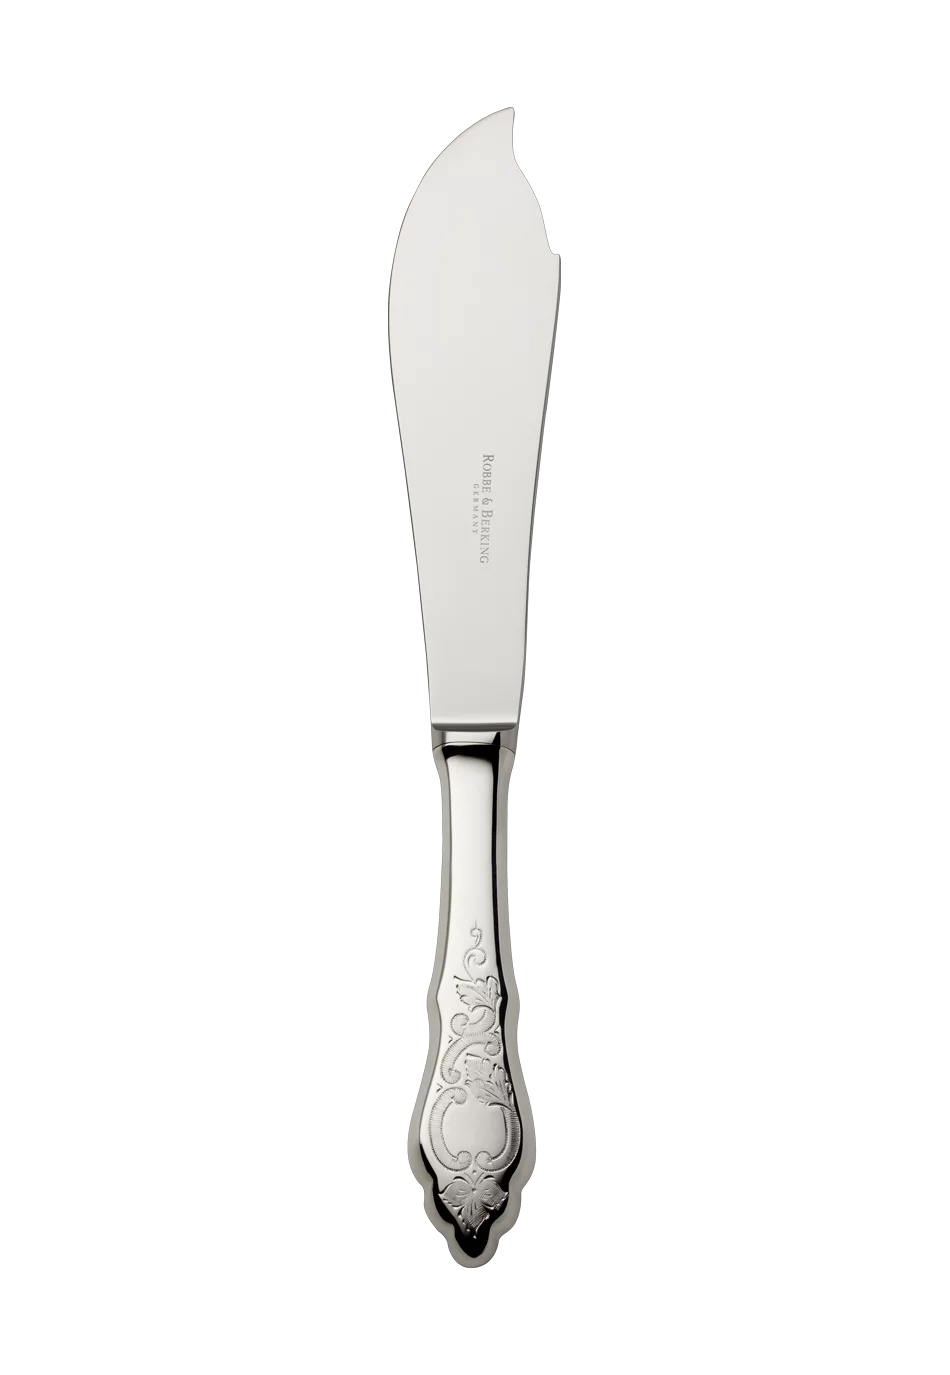 Ostfriesen Tart Knife (150g massive silverplated)